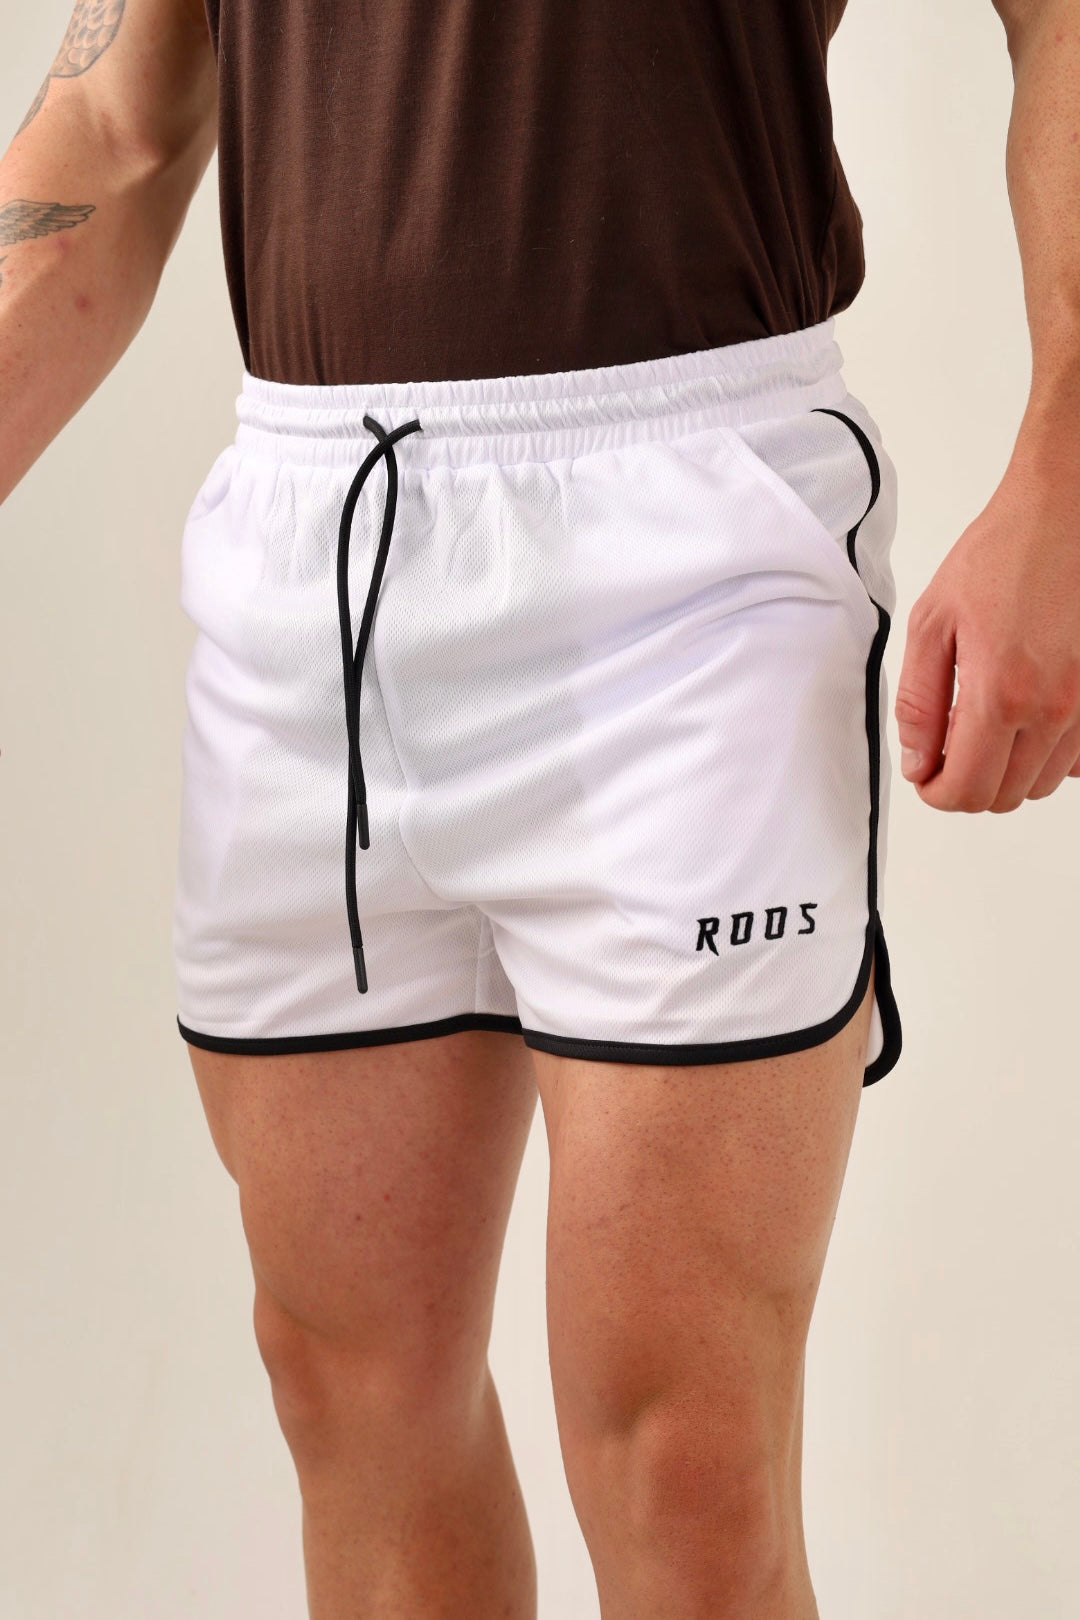 Retro Shorts - White